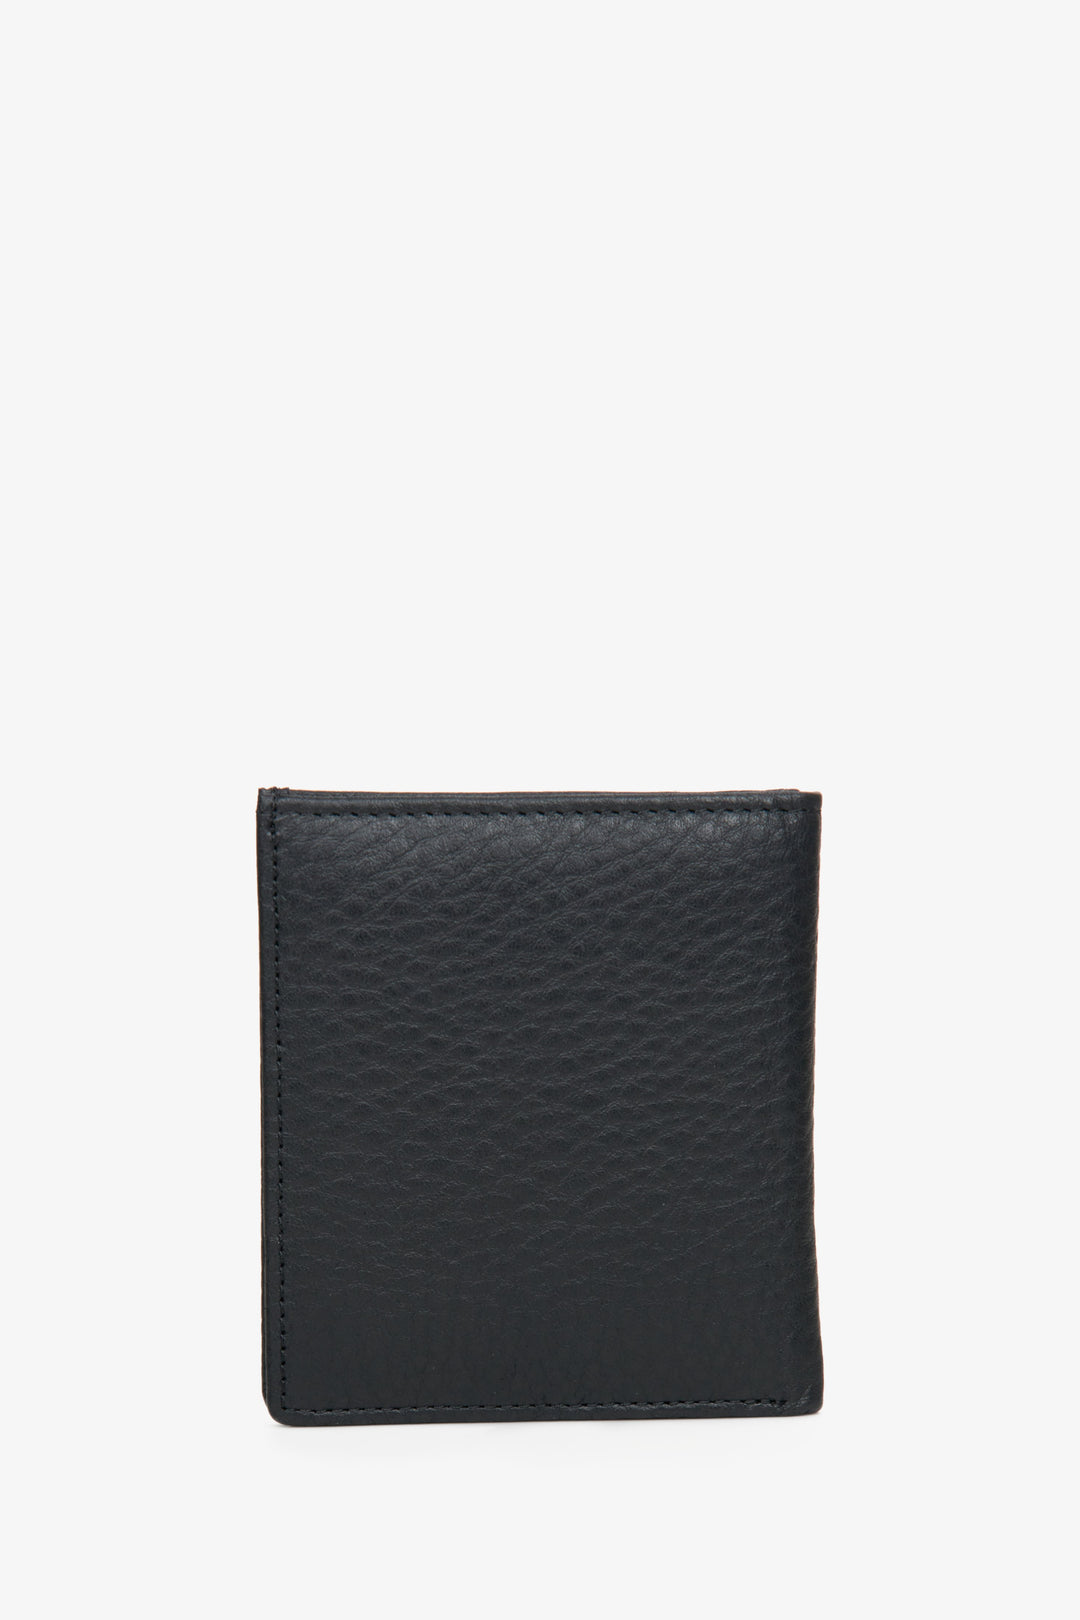 Men's black compact wallet by Estro.